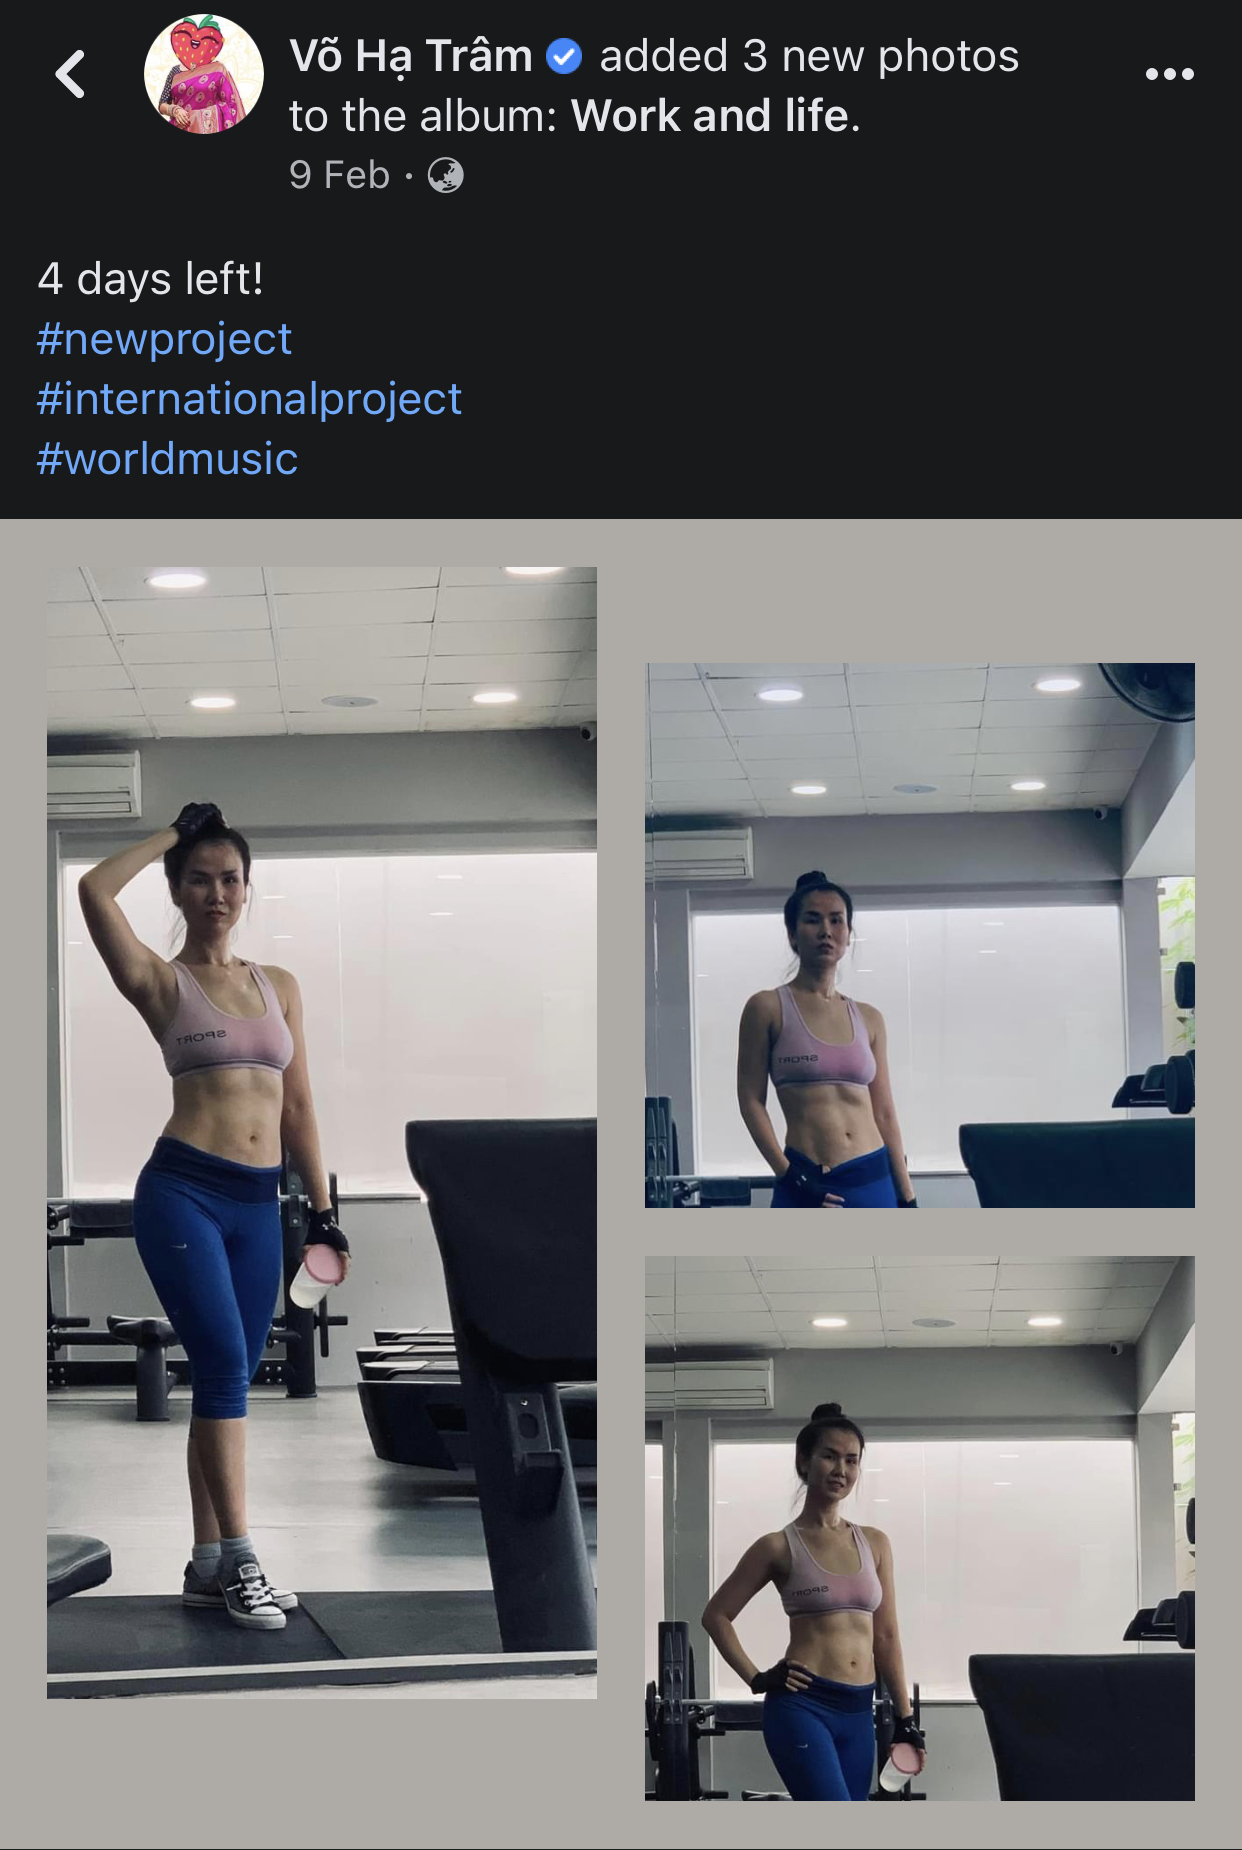 Nhiều người hâm mộ cũng nhắc lại khoảng thời gian đầu tháng 2, Võ Hạ Trâm đã đăng tải những tấm hình trong phòng gym với hashtag #newproject (dự án mới).